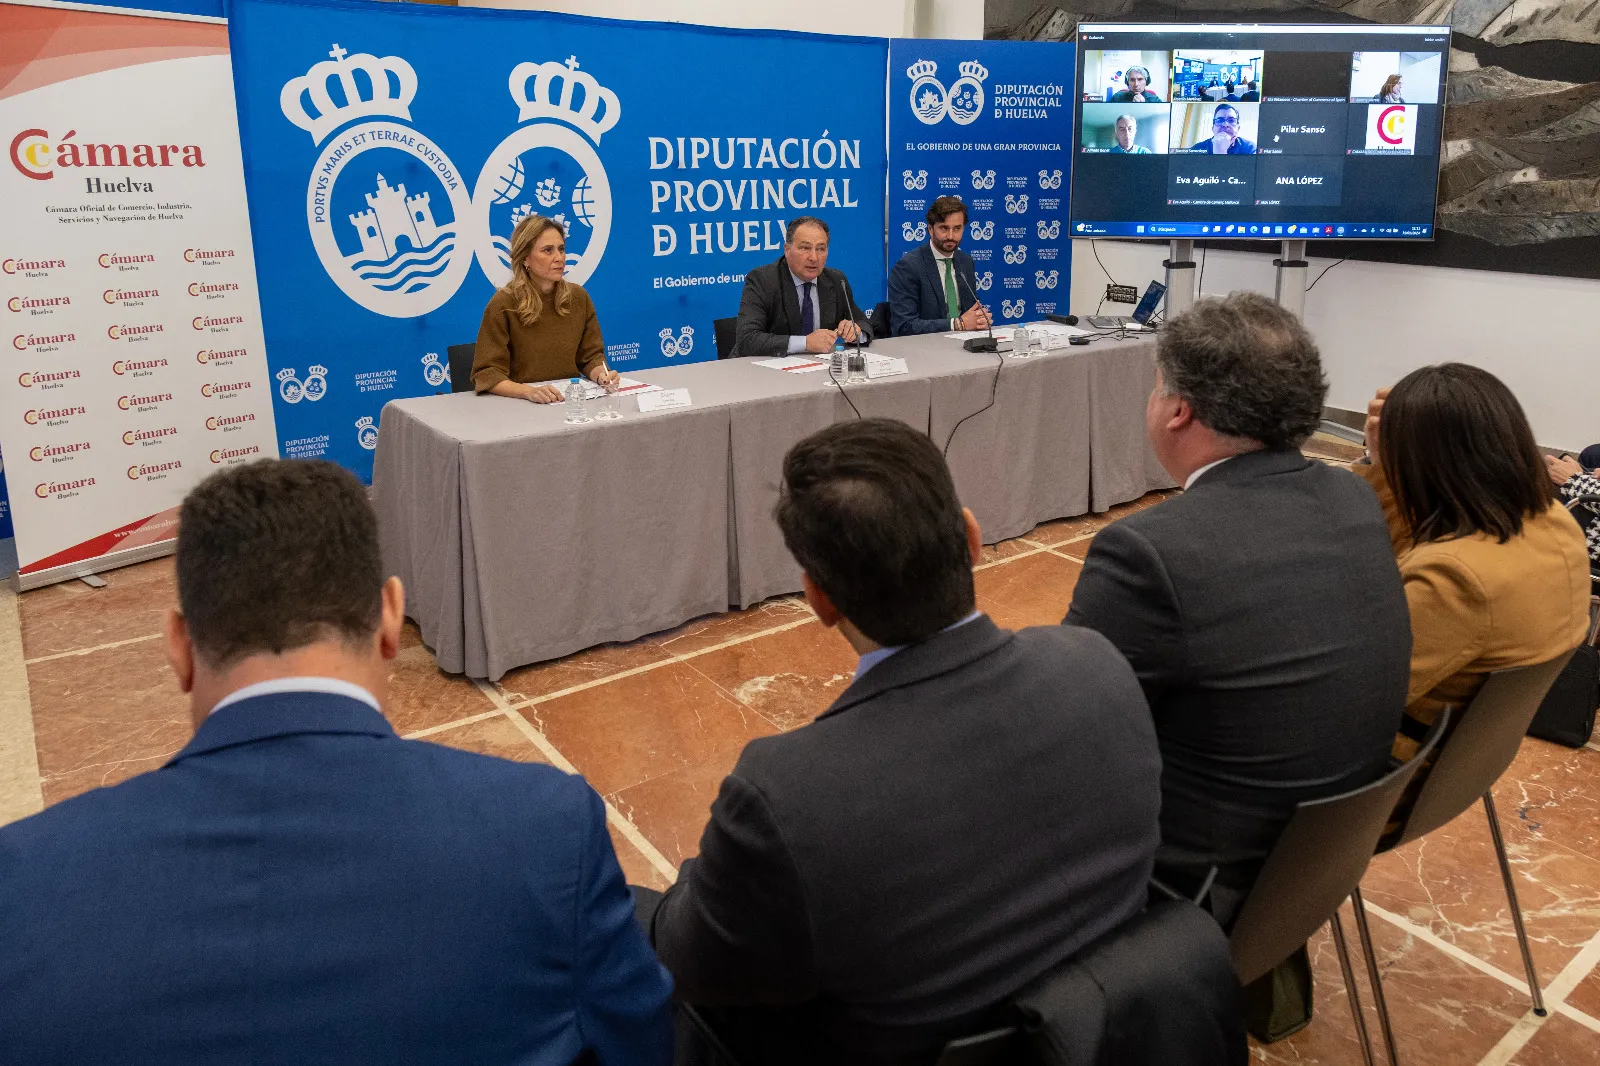 La comisión de Pymes de Cámara de España celebra en Huelva una sesión sobre buenas prácticas regulatorias y de negocio